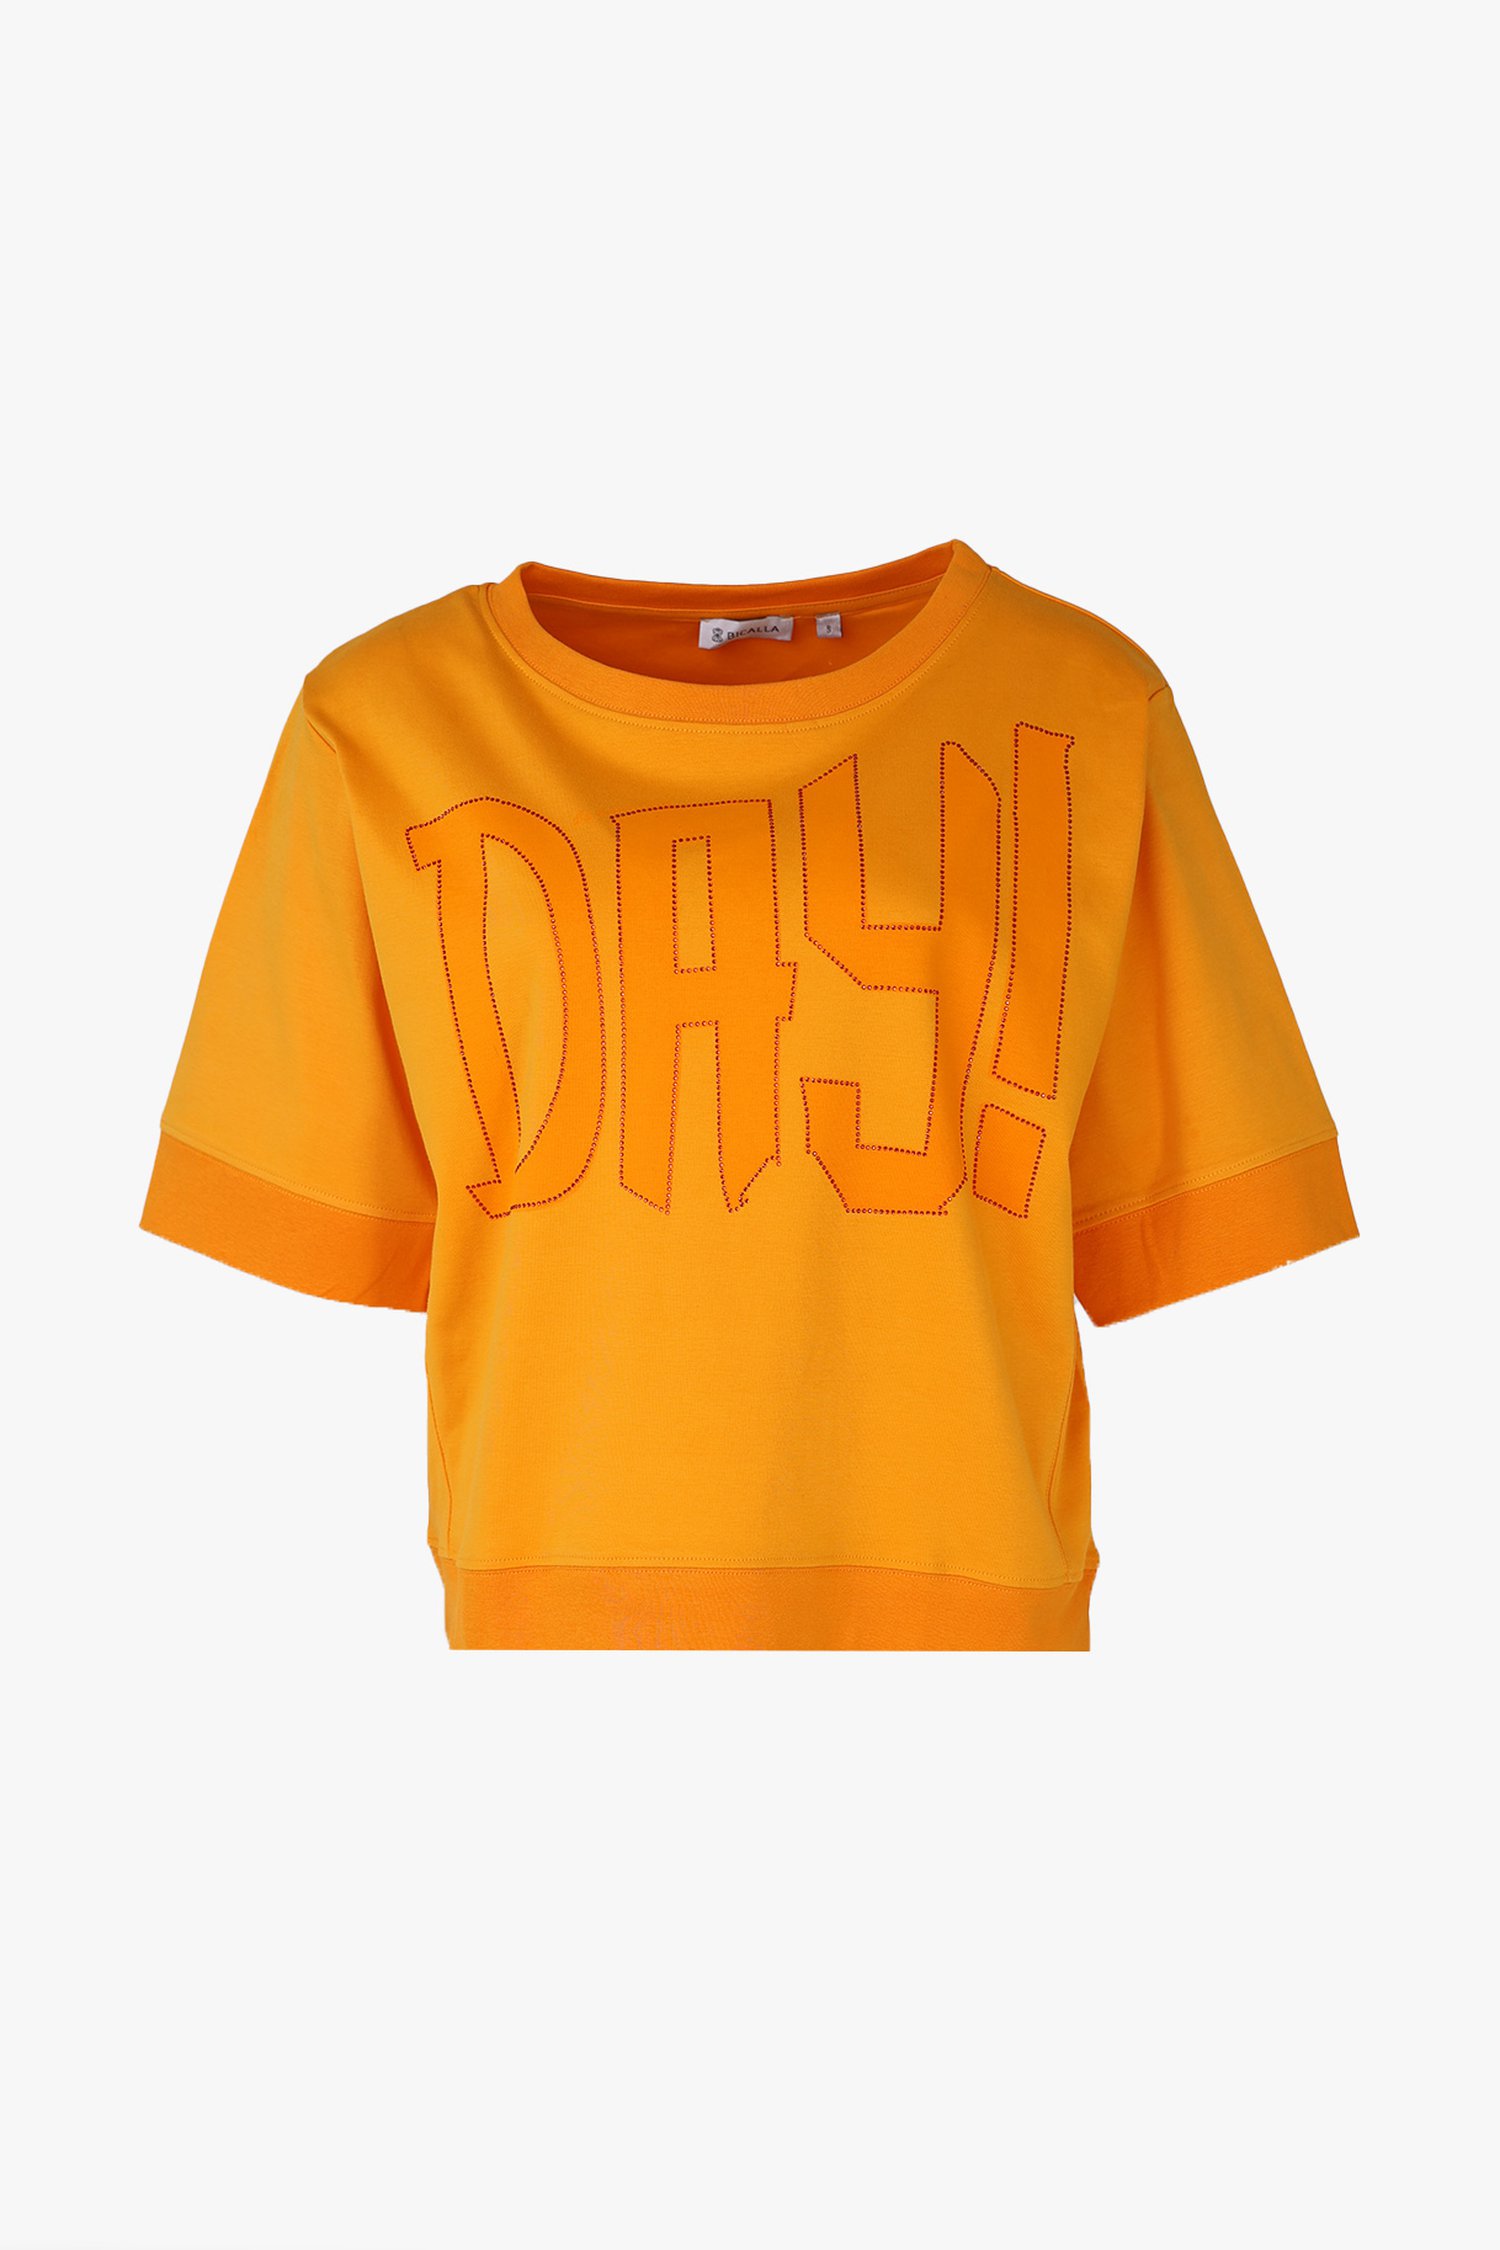 T-shirt orange à manches 3/4 de Bicalla pour Femmes